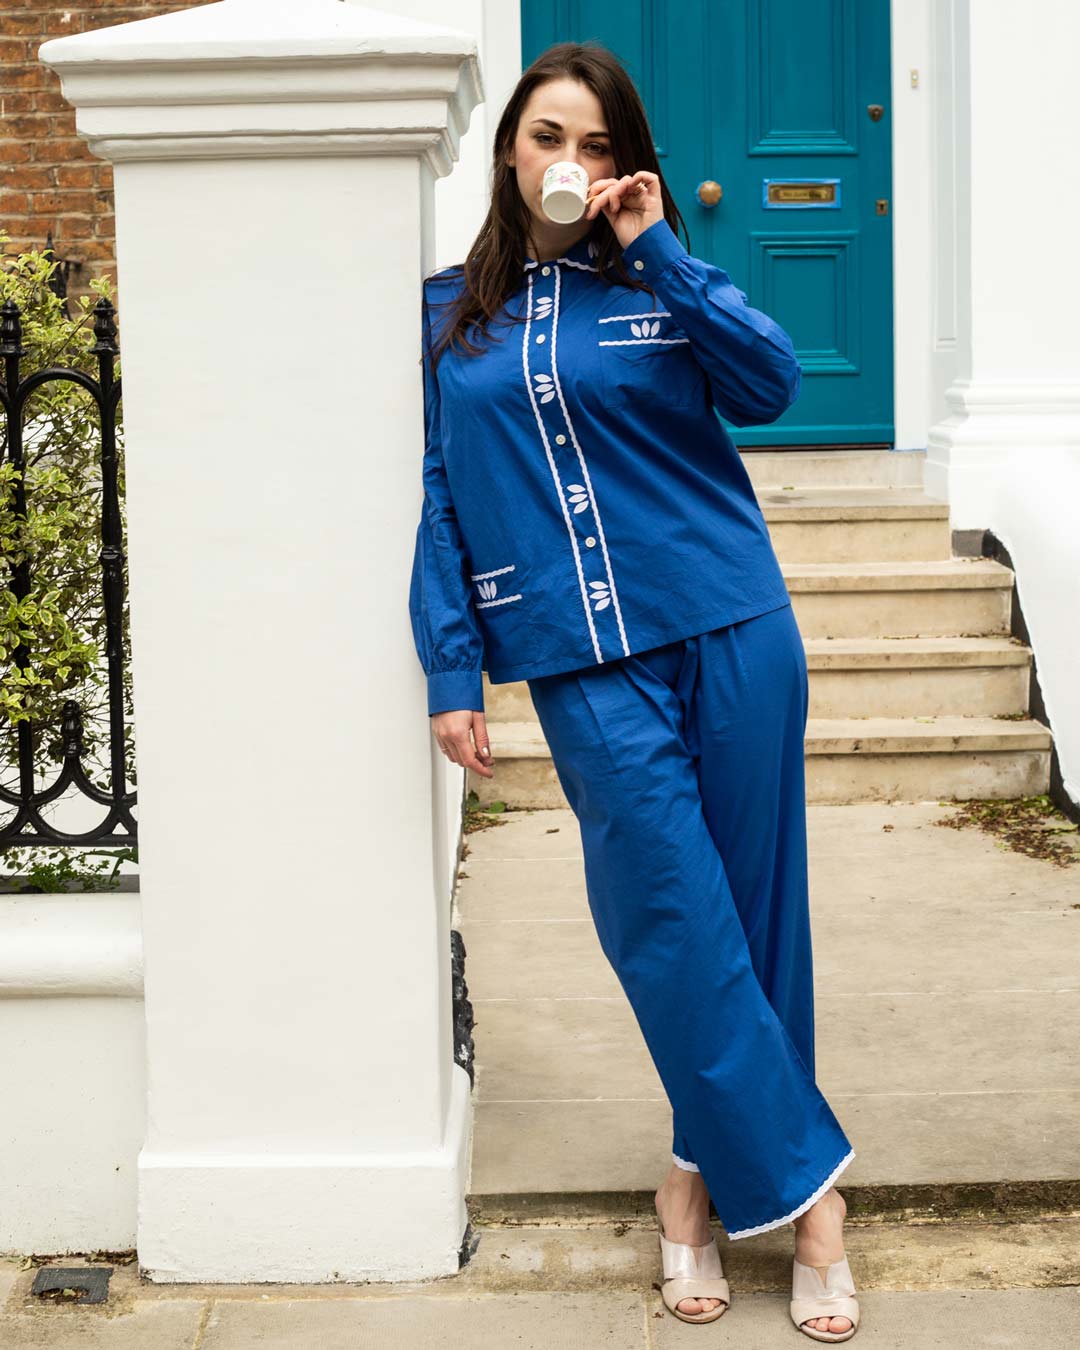 Embroidered Luxury Pyjamas Set - Majorelle blue